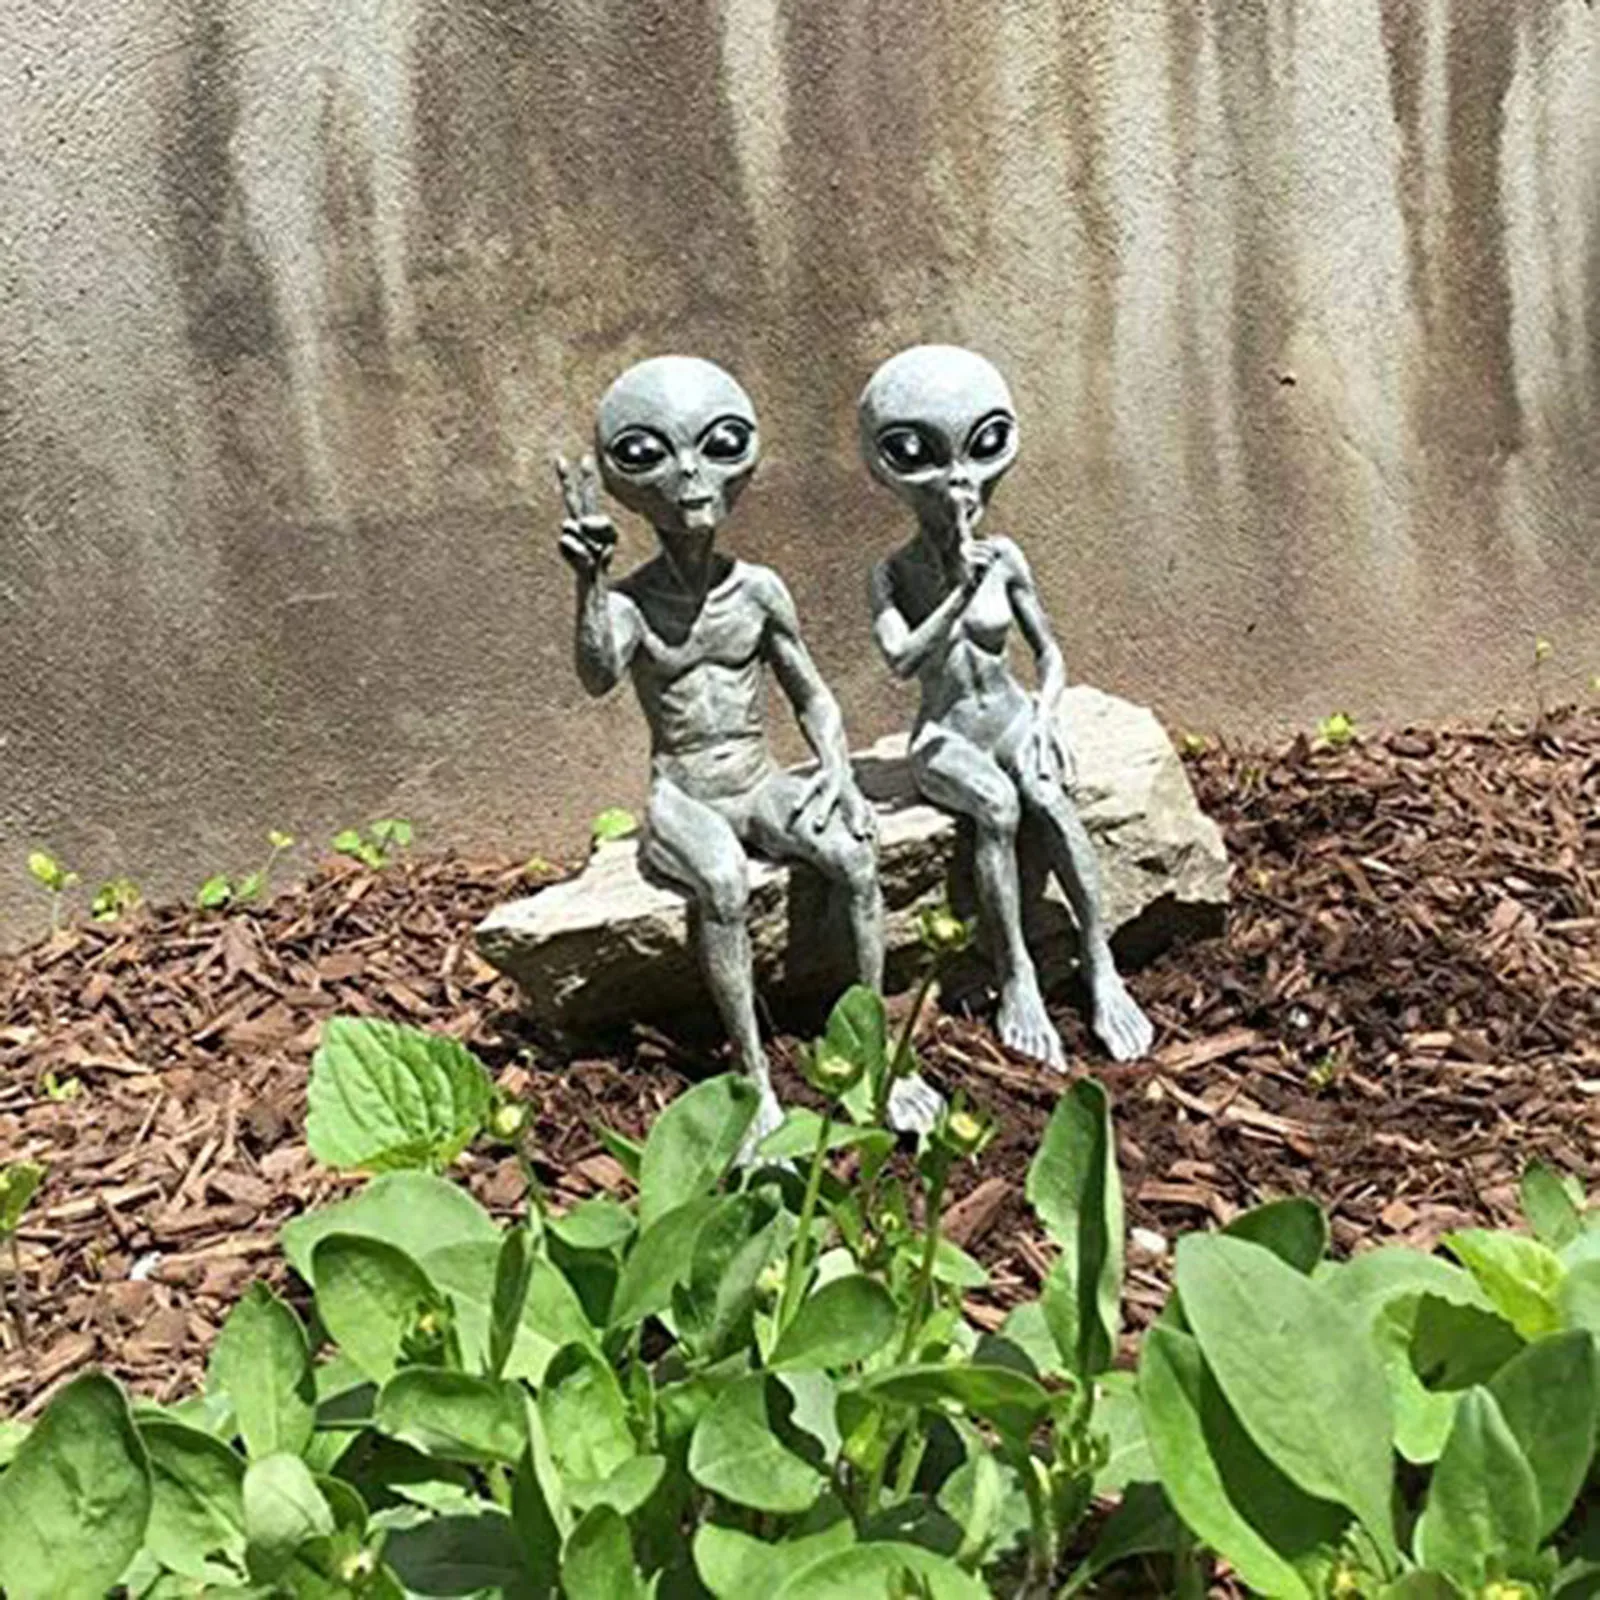 

Outer Space Alien Statue Martians Garden Statues Figurine Set For Home Indoor Outdoor Figurines Garden Ornaments Miniatures 2021